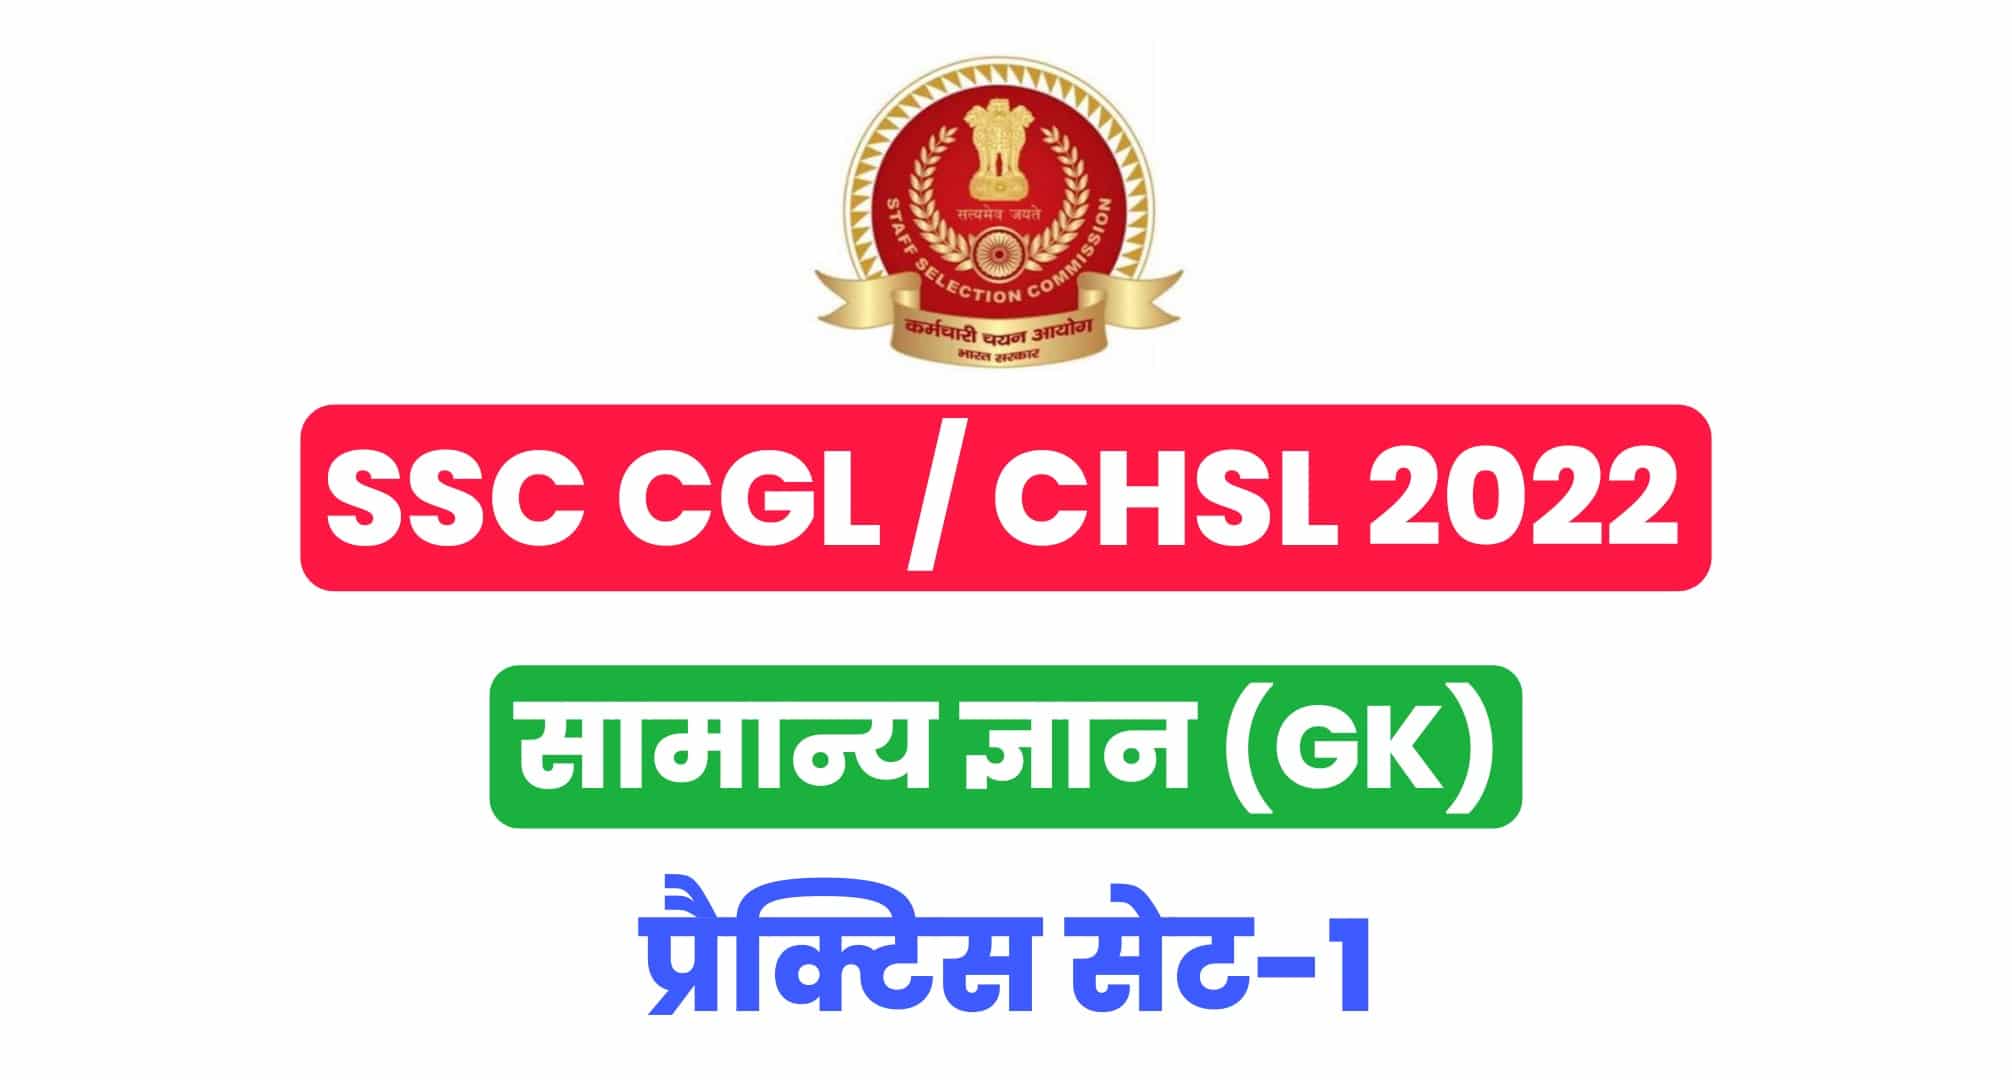 SSC CGL / CHSL GK प्रैक्टिस सेट :  सामान्य ज्ञान के 25 महत्वपूर्ण प्रश्न, परीक्षा से पहले पढ़ लें